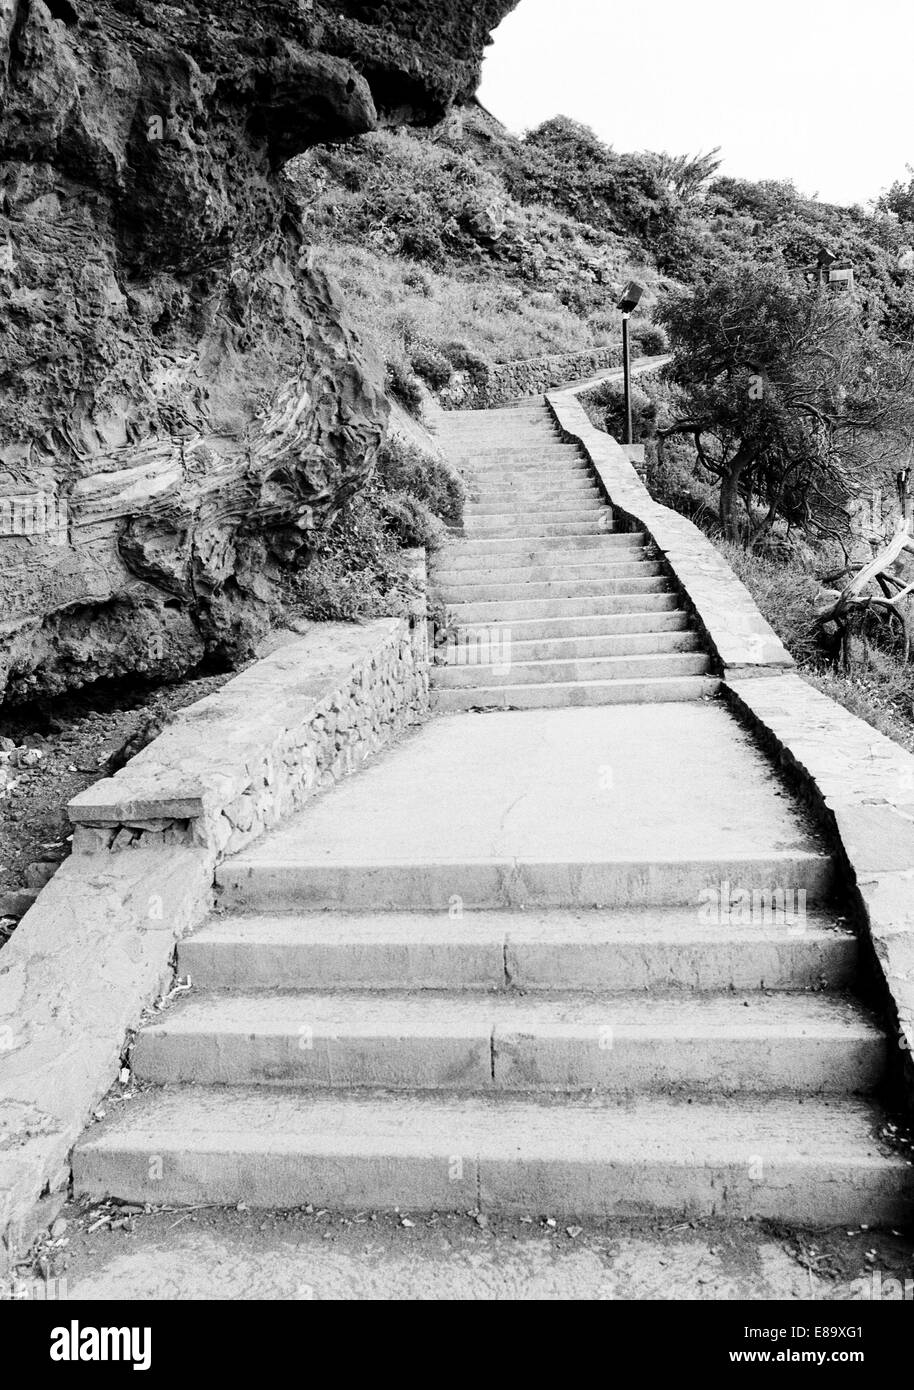 Achtziger Jahre, schmaler Fusspfad Kuestenlandschaft Treppenstufen felsiger mit en, Puerto de la Cruz, Teneriffa, Kanarische Inseln, Spanien Banque D'Images